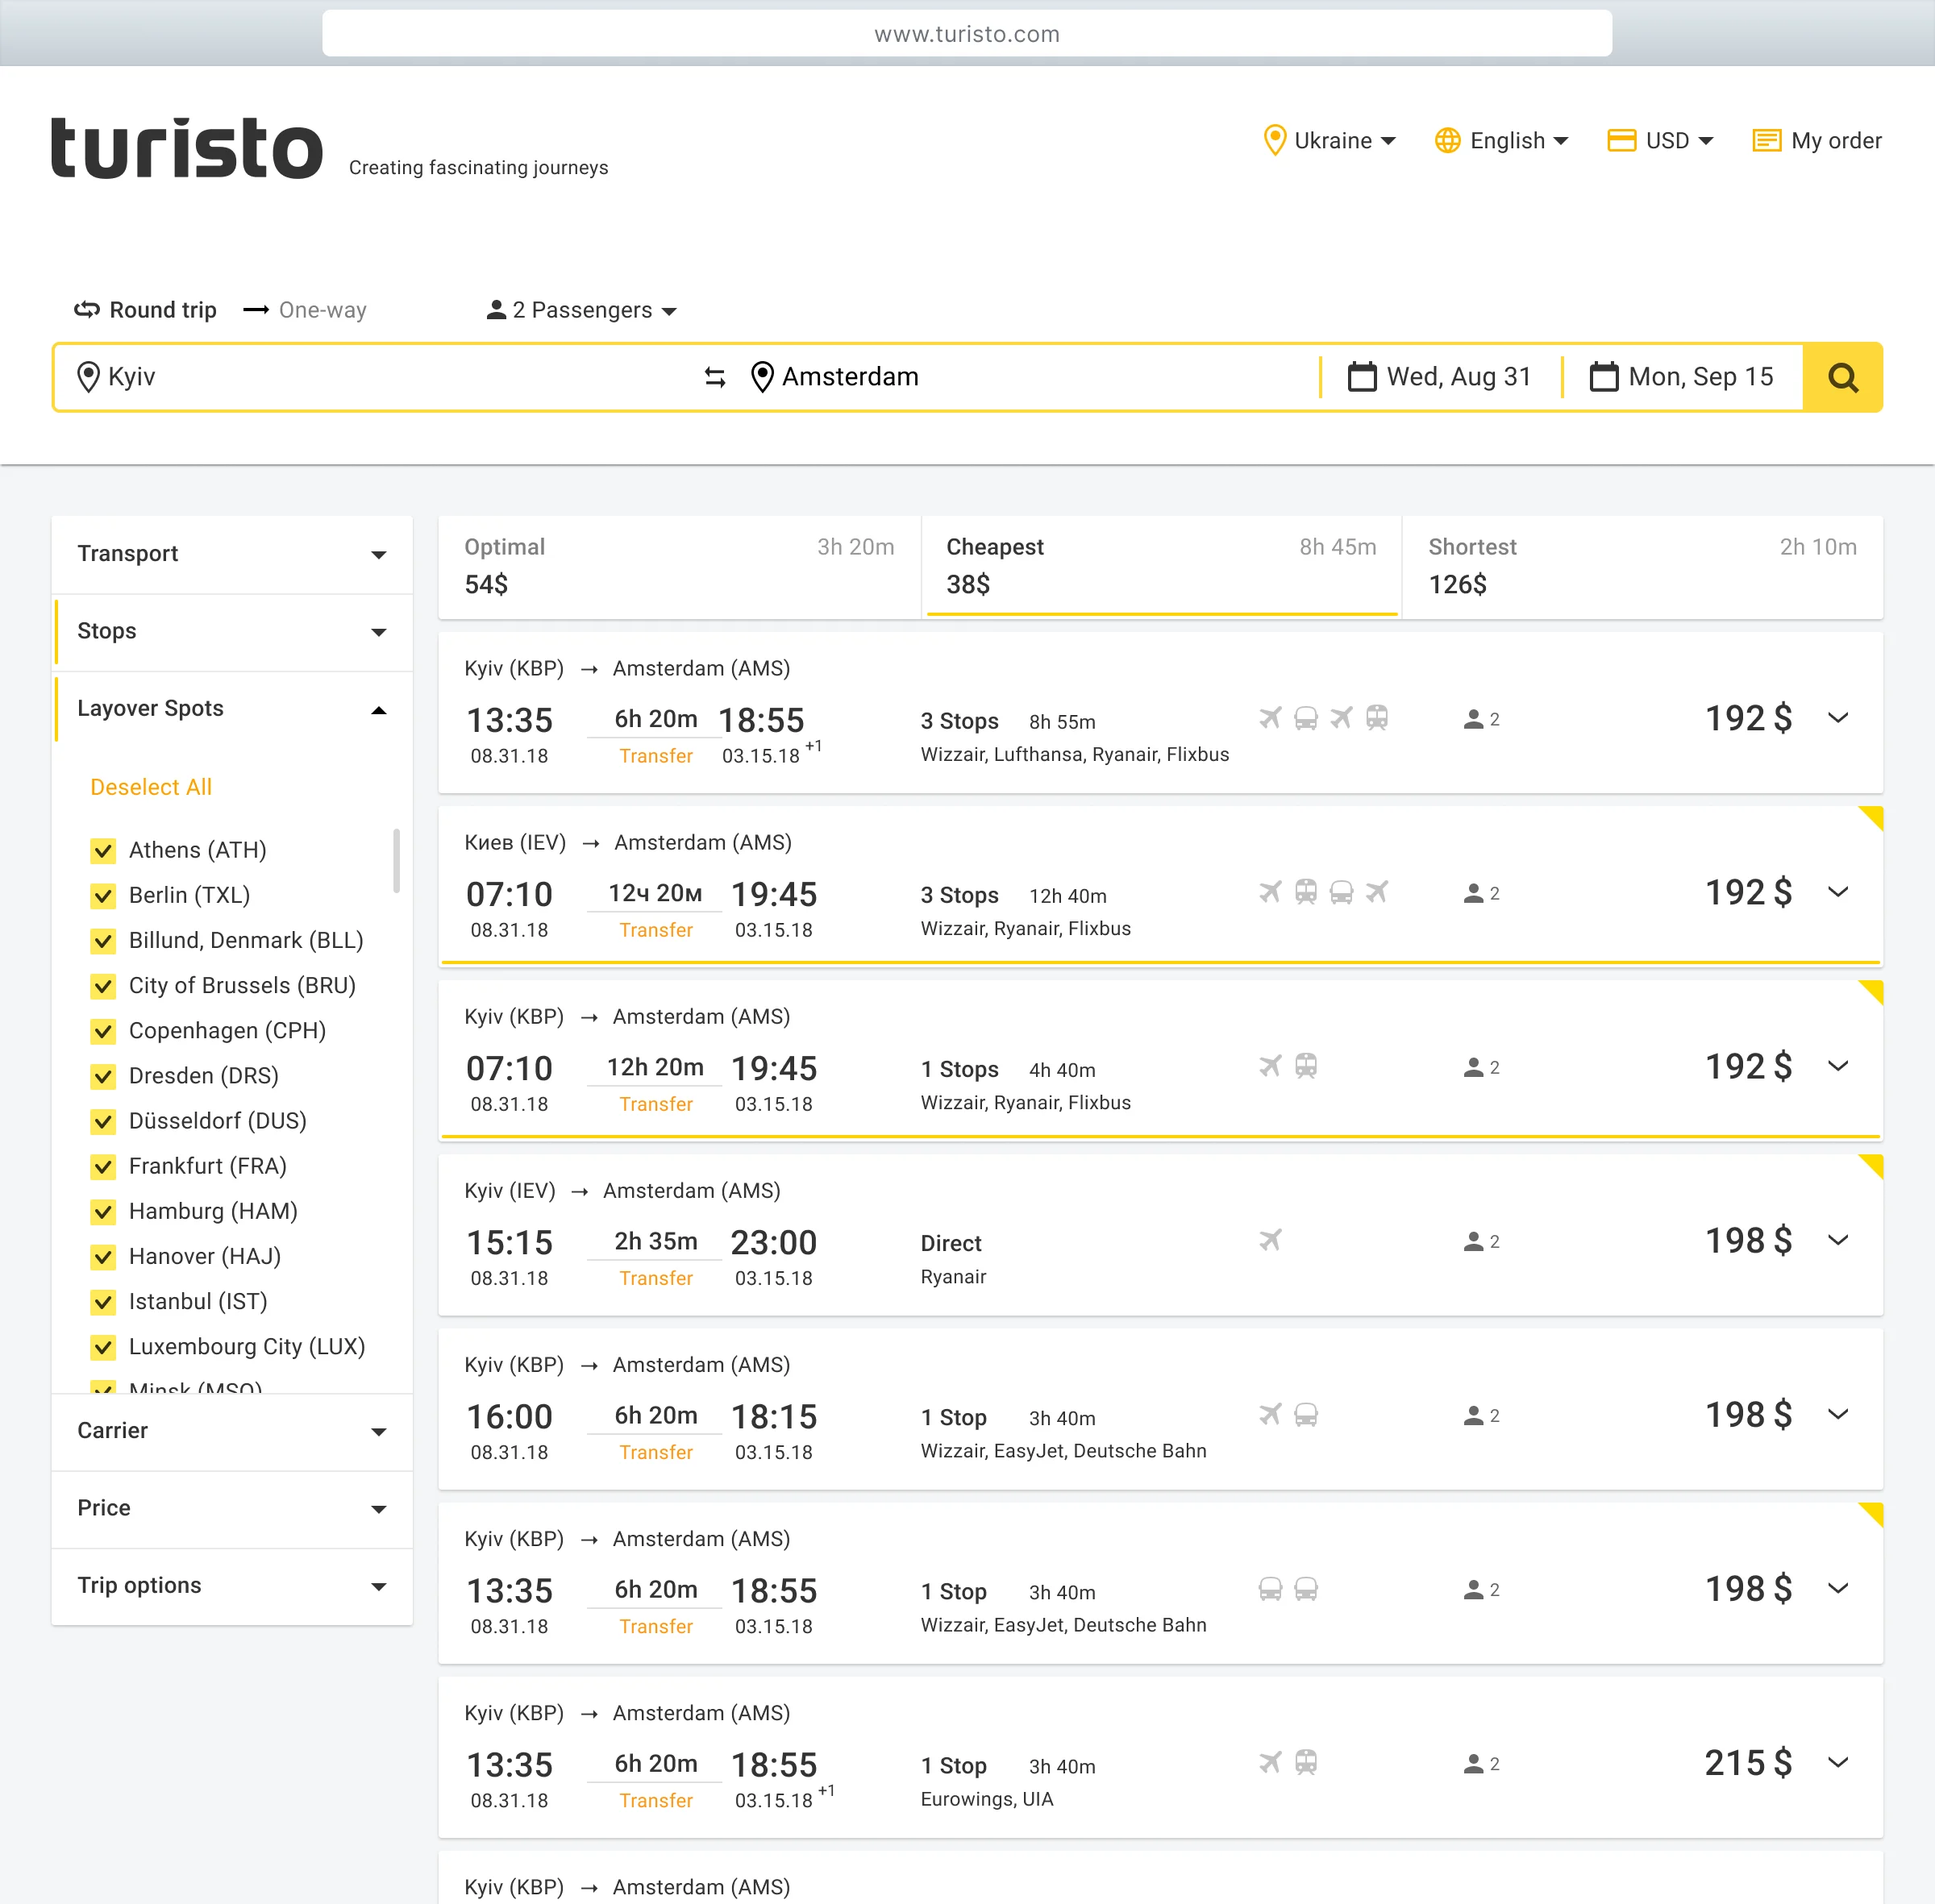 Turisto search result